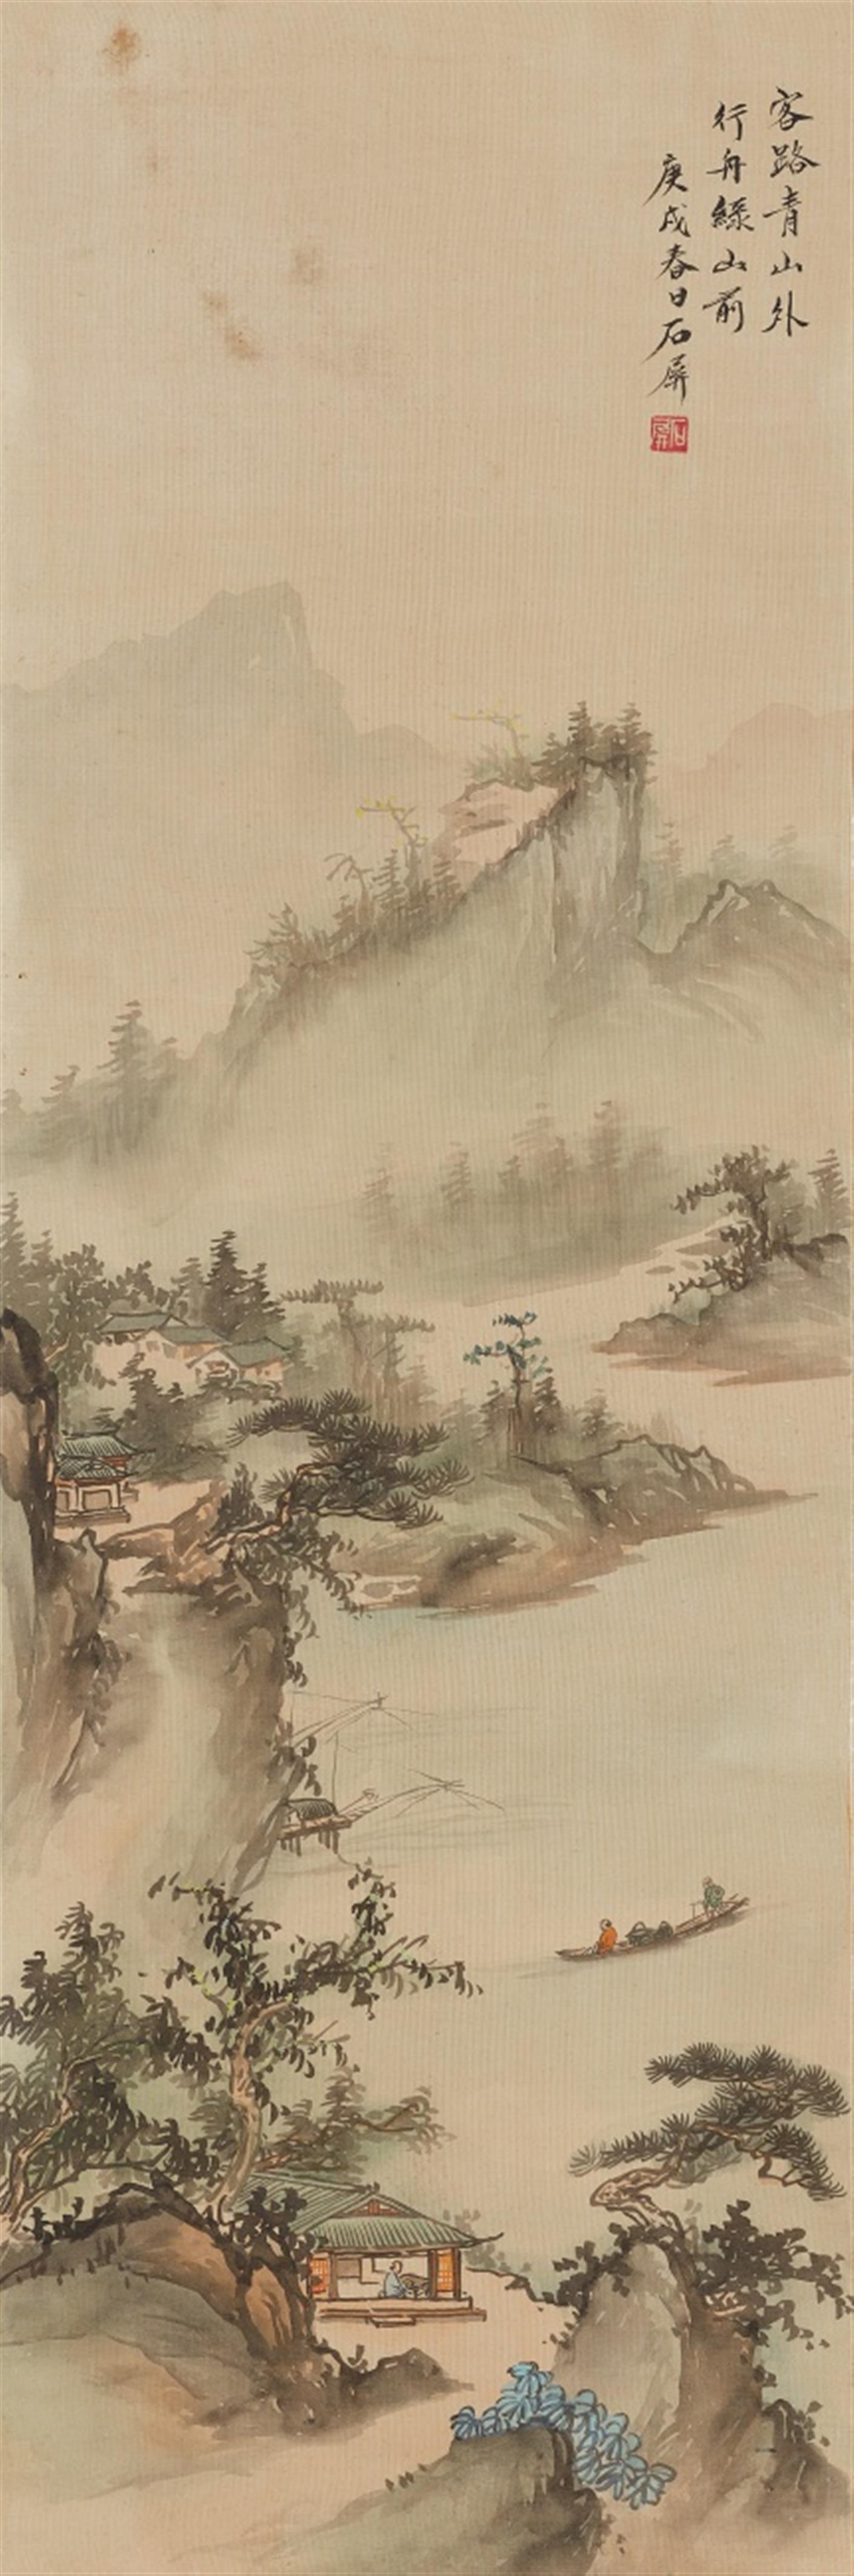 Shi Bing . 19./20. Jh. - Flusslandschaft. Hängerolle. Tusche und wenige Farben auf Seide. Aufschrift, zyklisch datiert gengxu (1910+/-60), sign. und Siegel: Shi Bing. - image-1